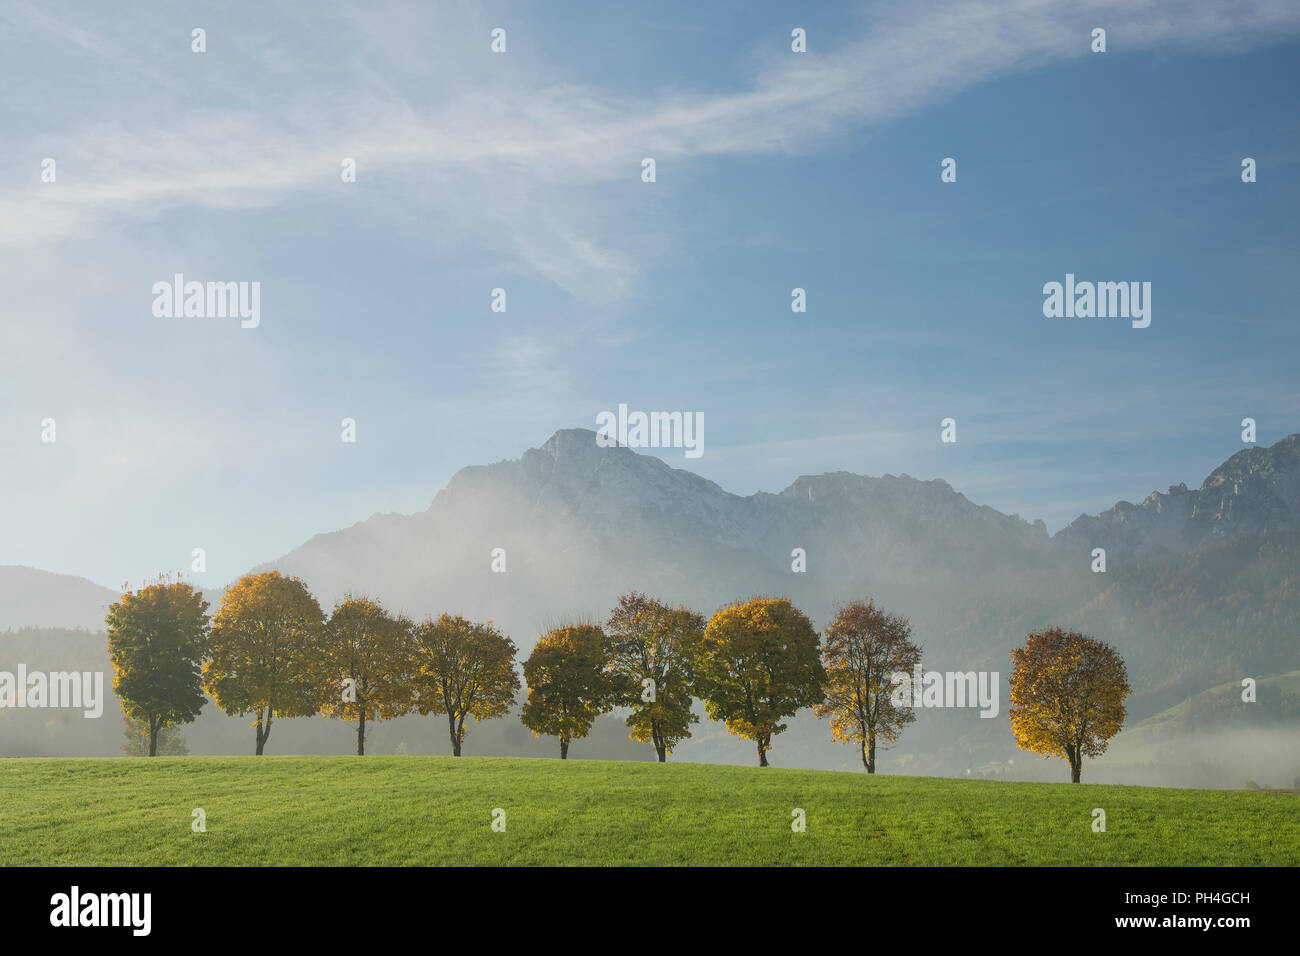 Avenue bordée d'arbres en automne près du village de colère avec les montagnes Hohenstaufen et Zwiesel en arrière-plan. La Haute-bavière, Allemagne Banque D'Images